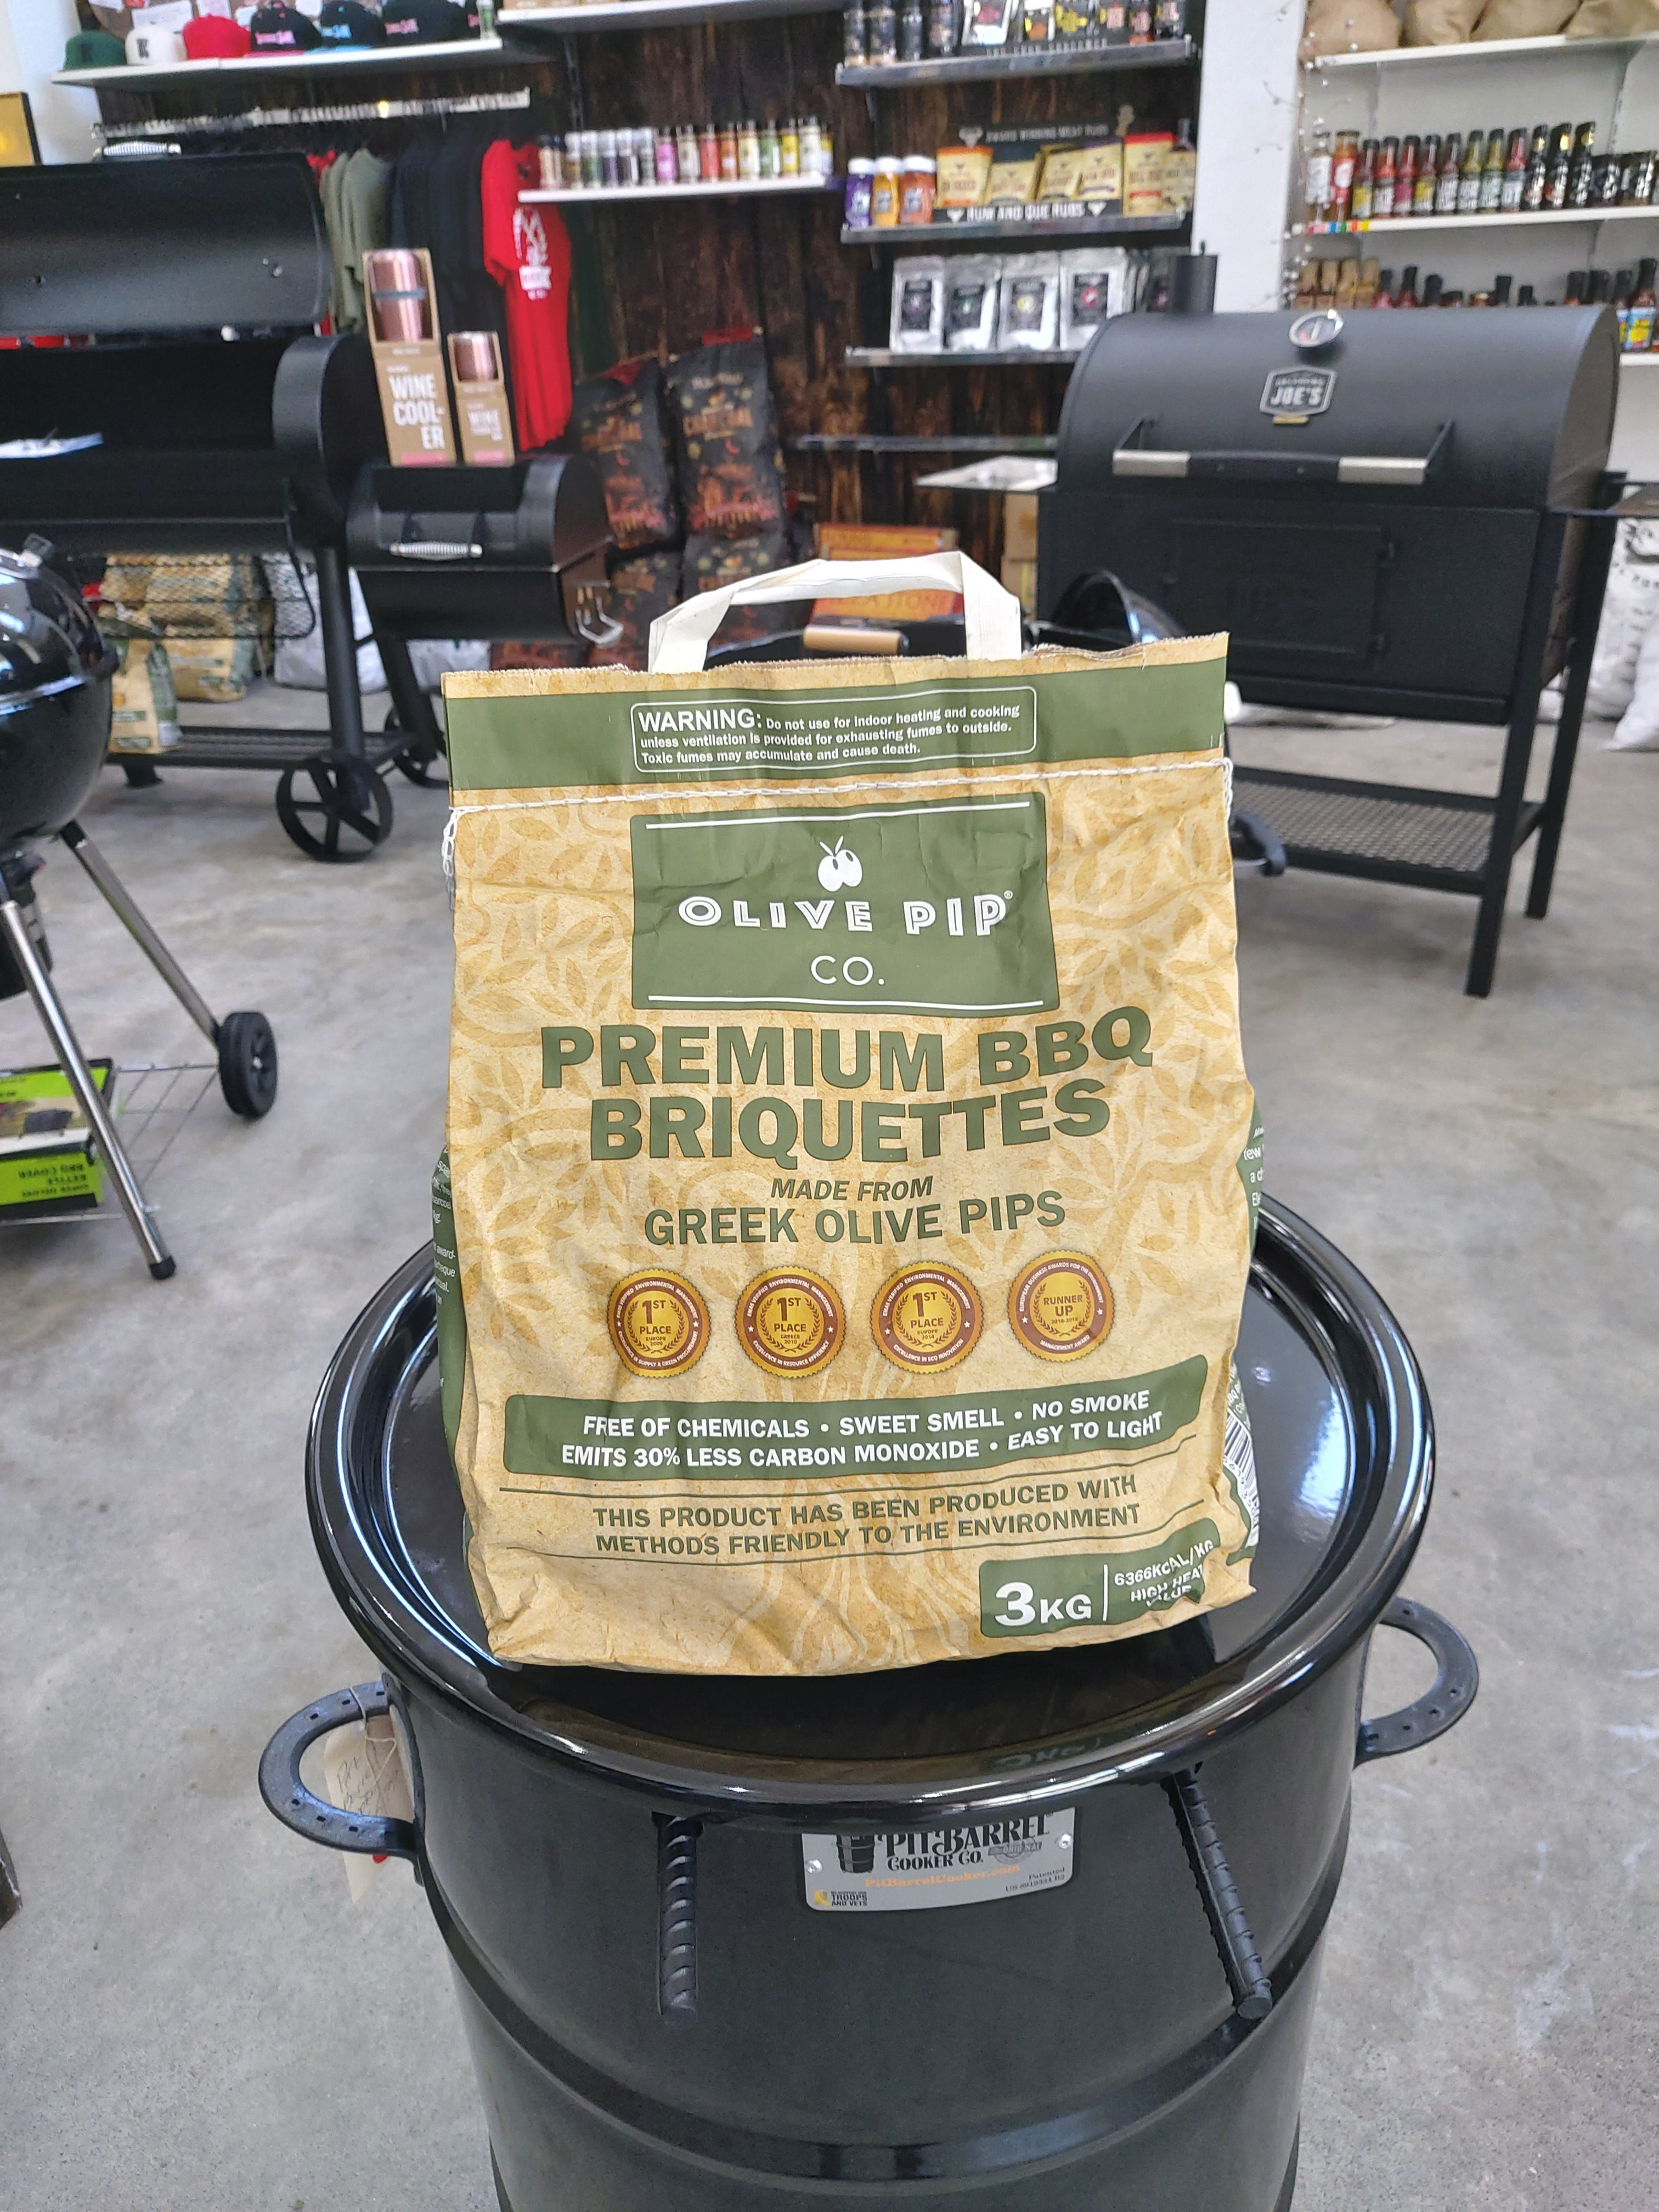 Olive Pip Co. Premium BBQ Briquettes 3kg, 8kg and 10kg